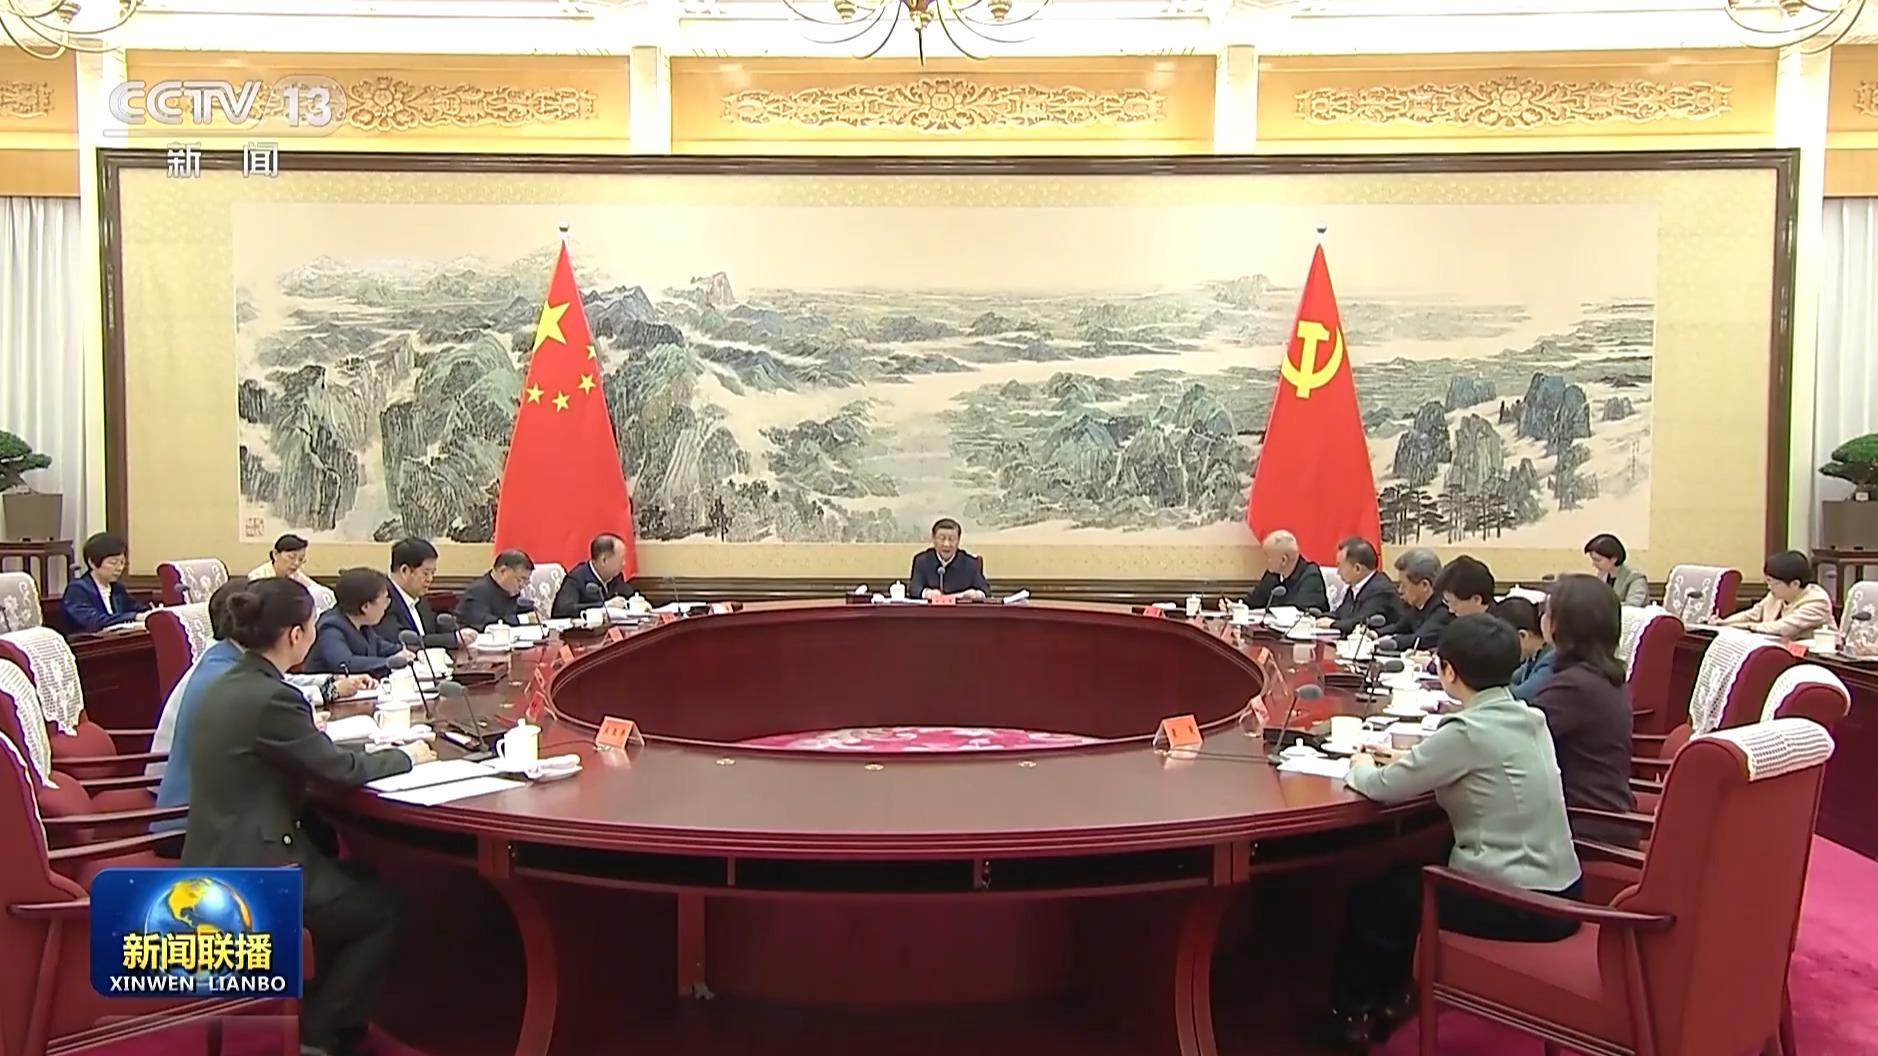 राष्ट्राध्यक्ष सी चिनफिङ तथा अखिल चीन महिला संघको नयाँ नेता समूहका सदस्य बीच सामूहिक वार्ता